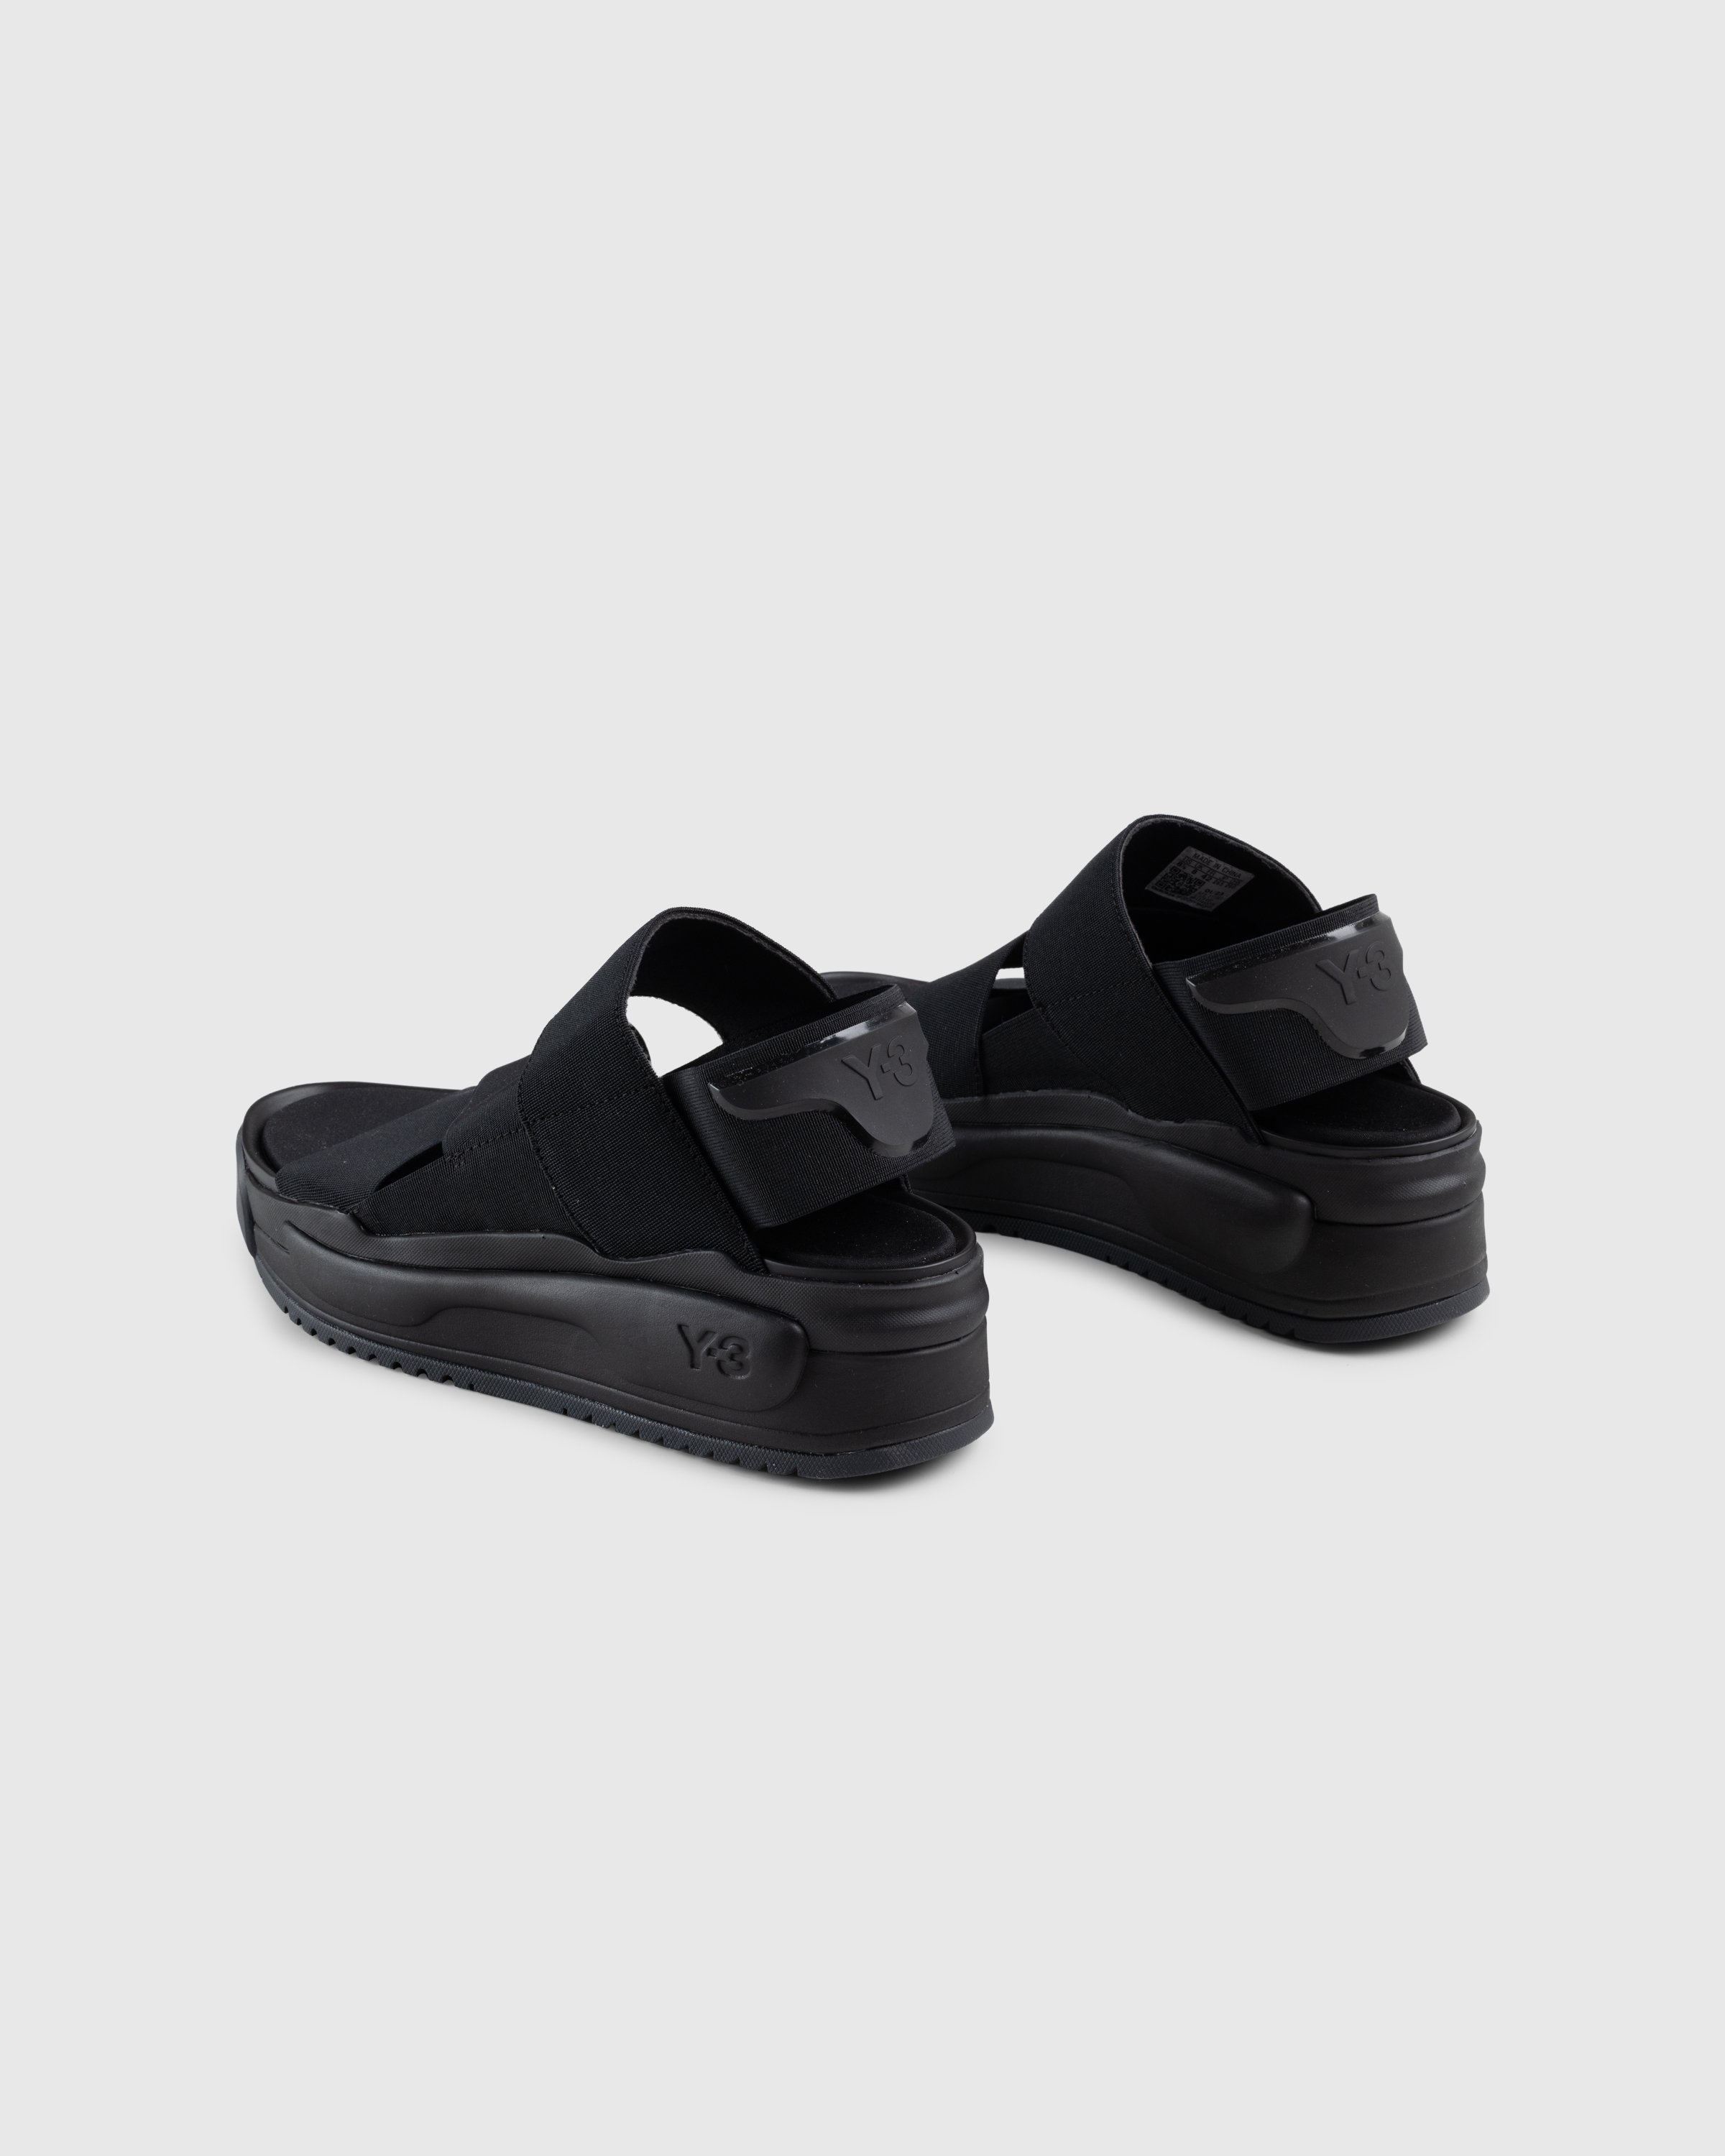 Y-3 - Y-3 Rivalry Sandal Black - Footwear - Black - Image 4